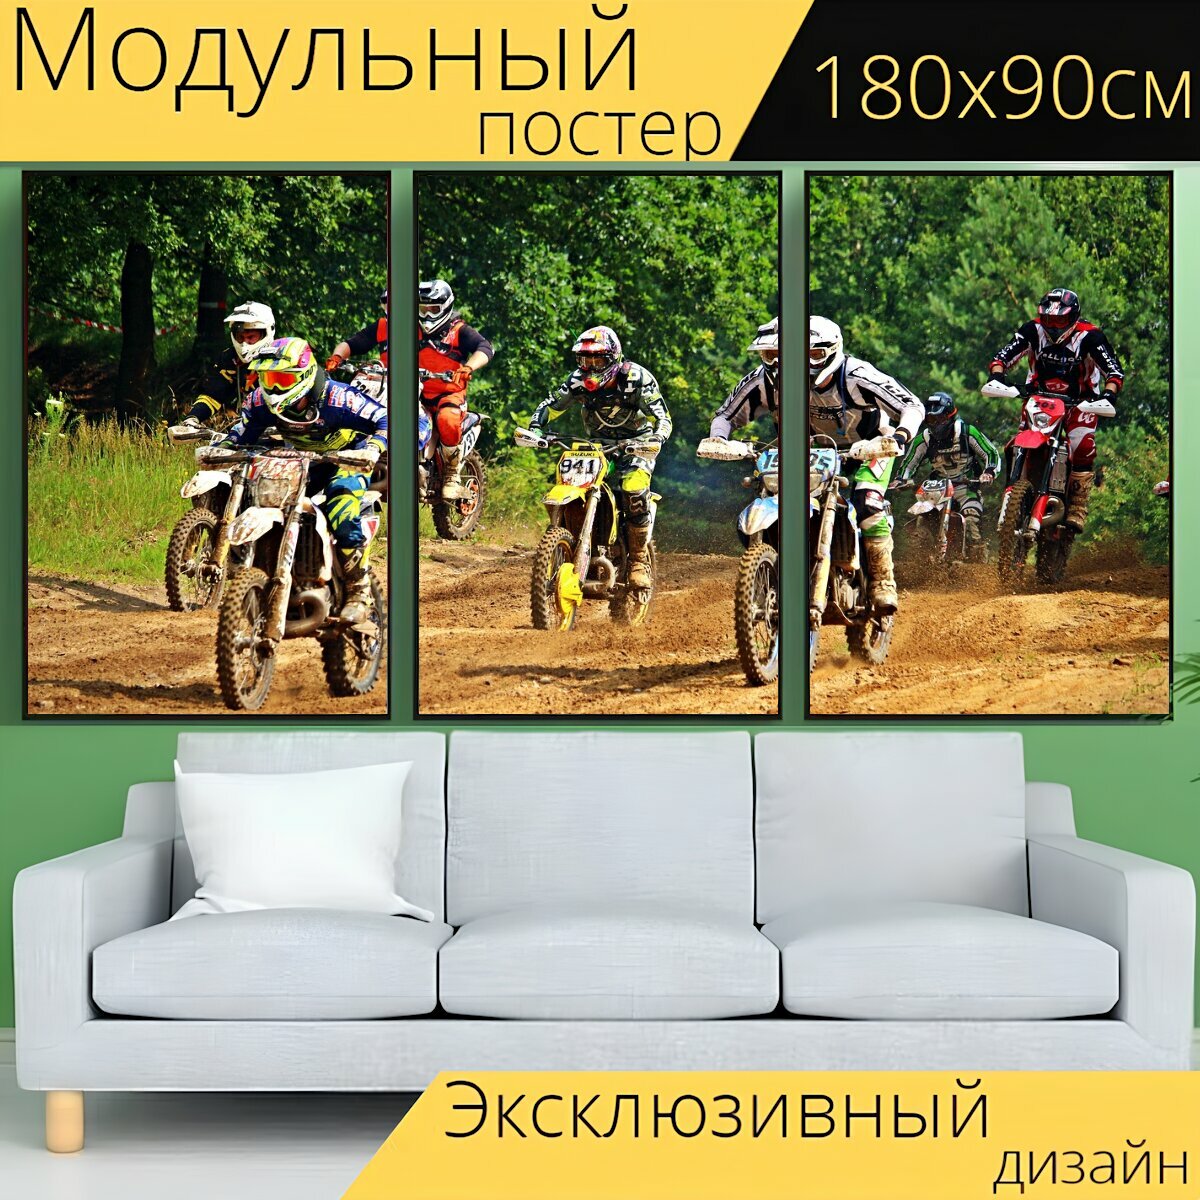 Модульный постер "Мотоцикл, виды спорта, мотокросс" 180 x 90 см. для интерьера